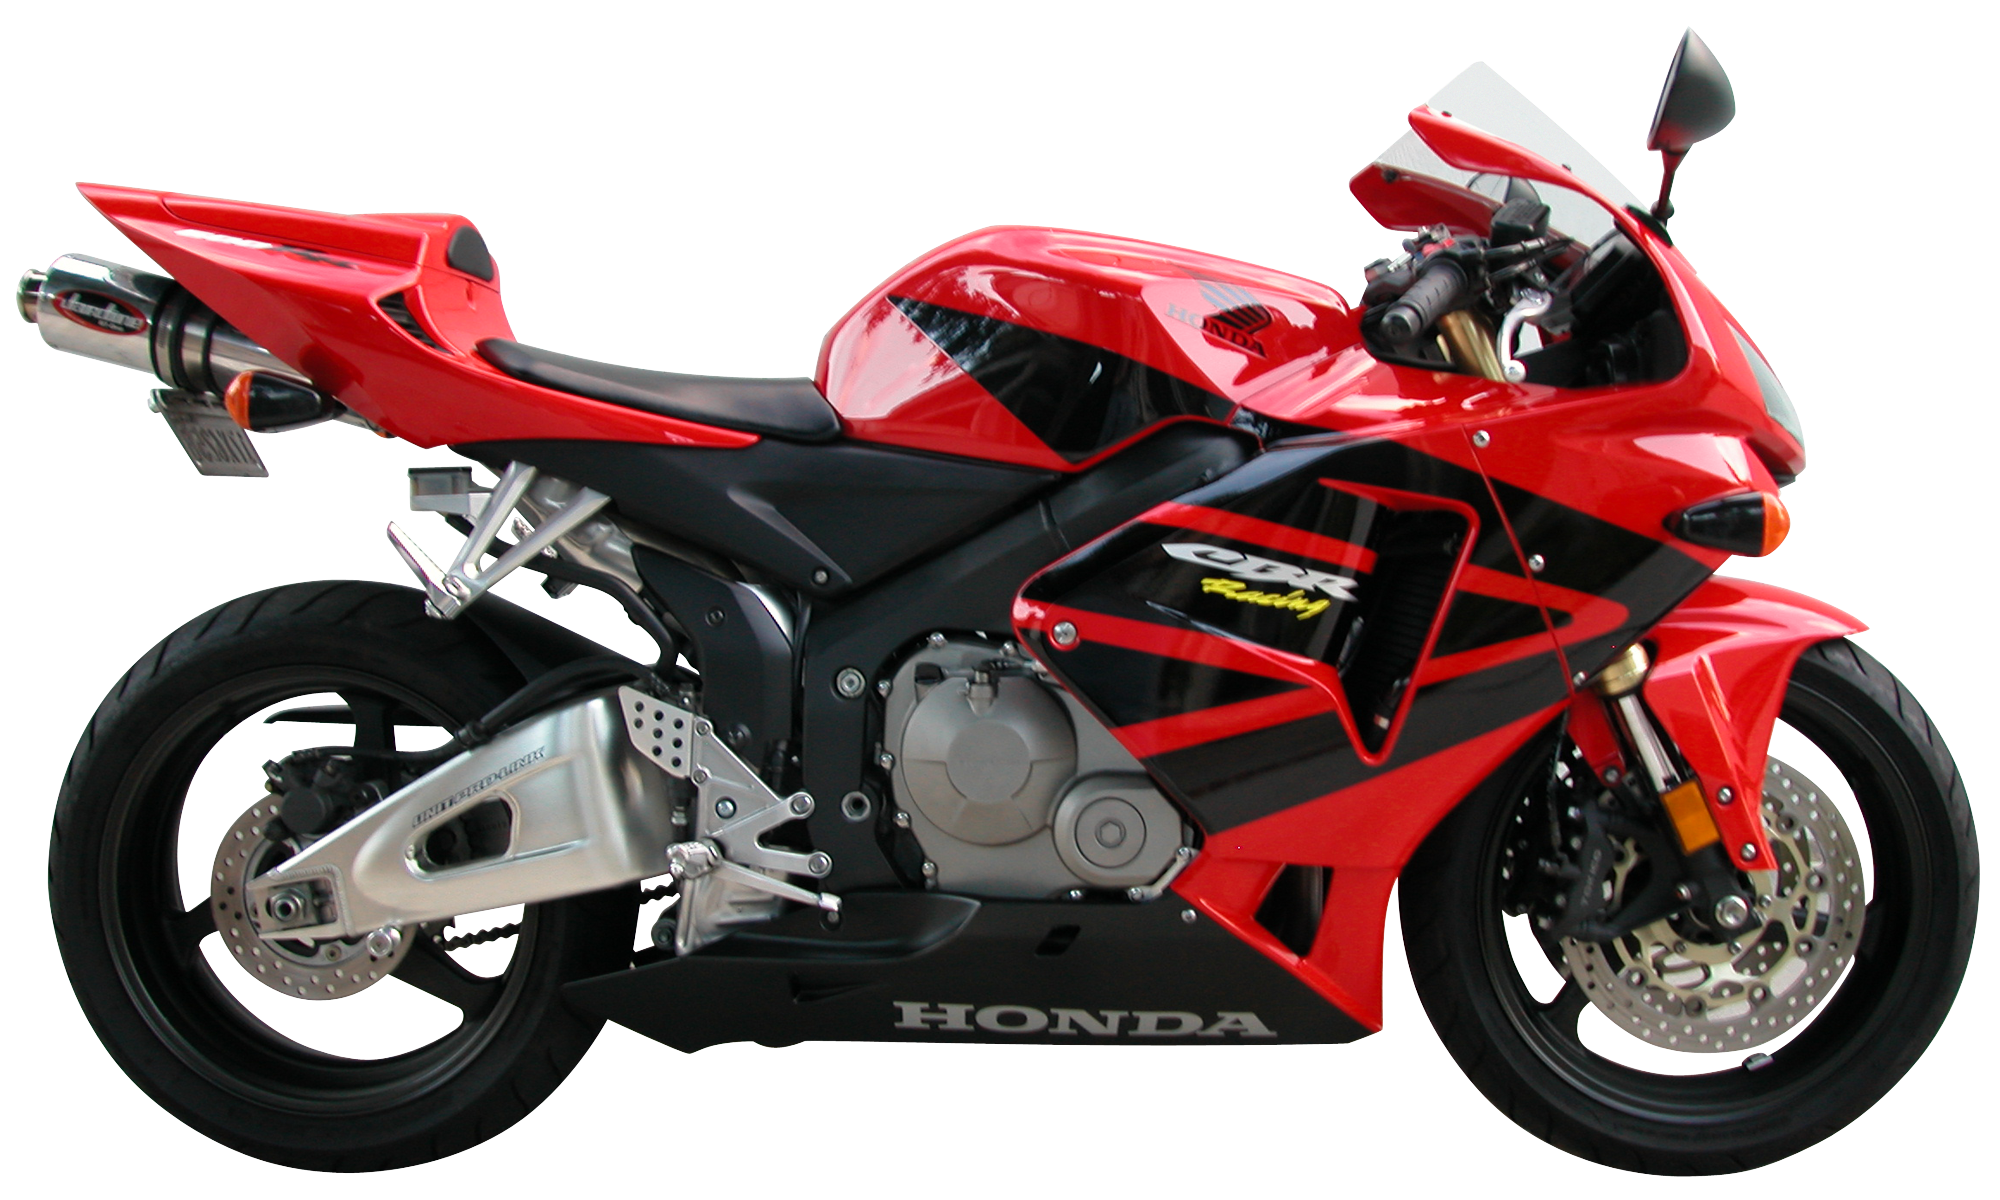 Motocicleta esportiva vermelha